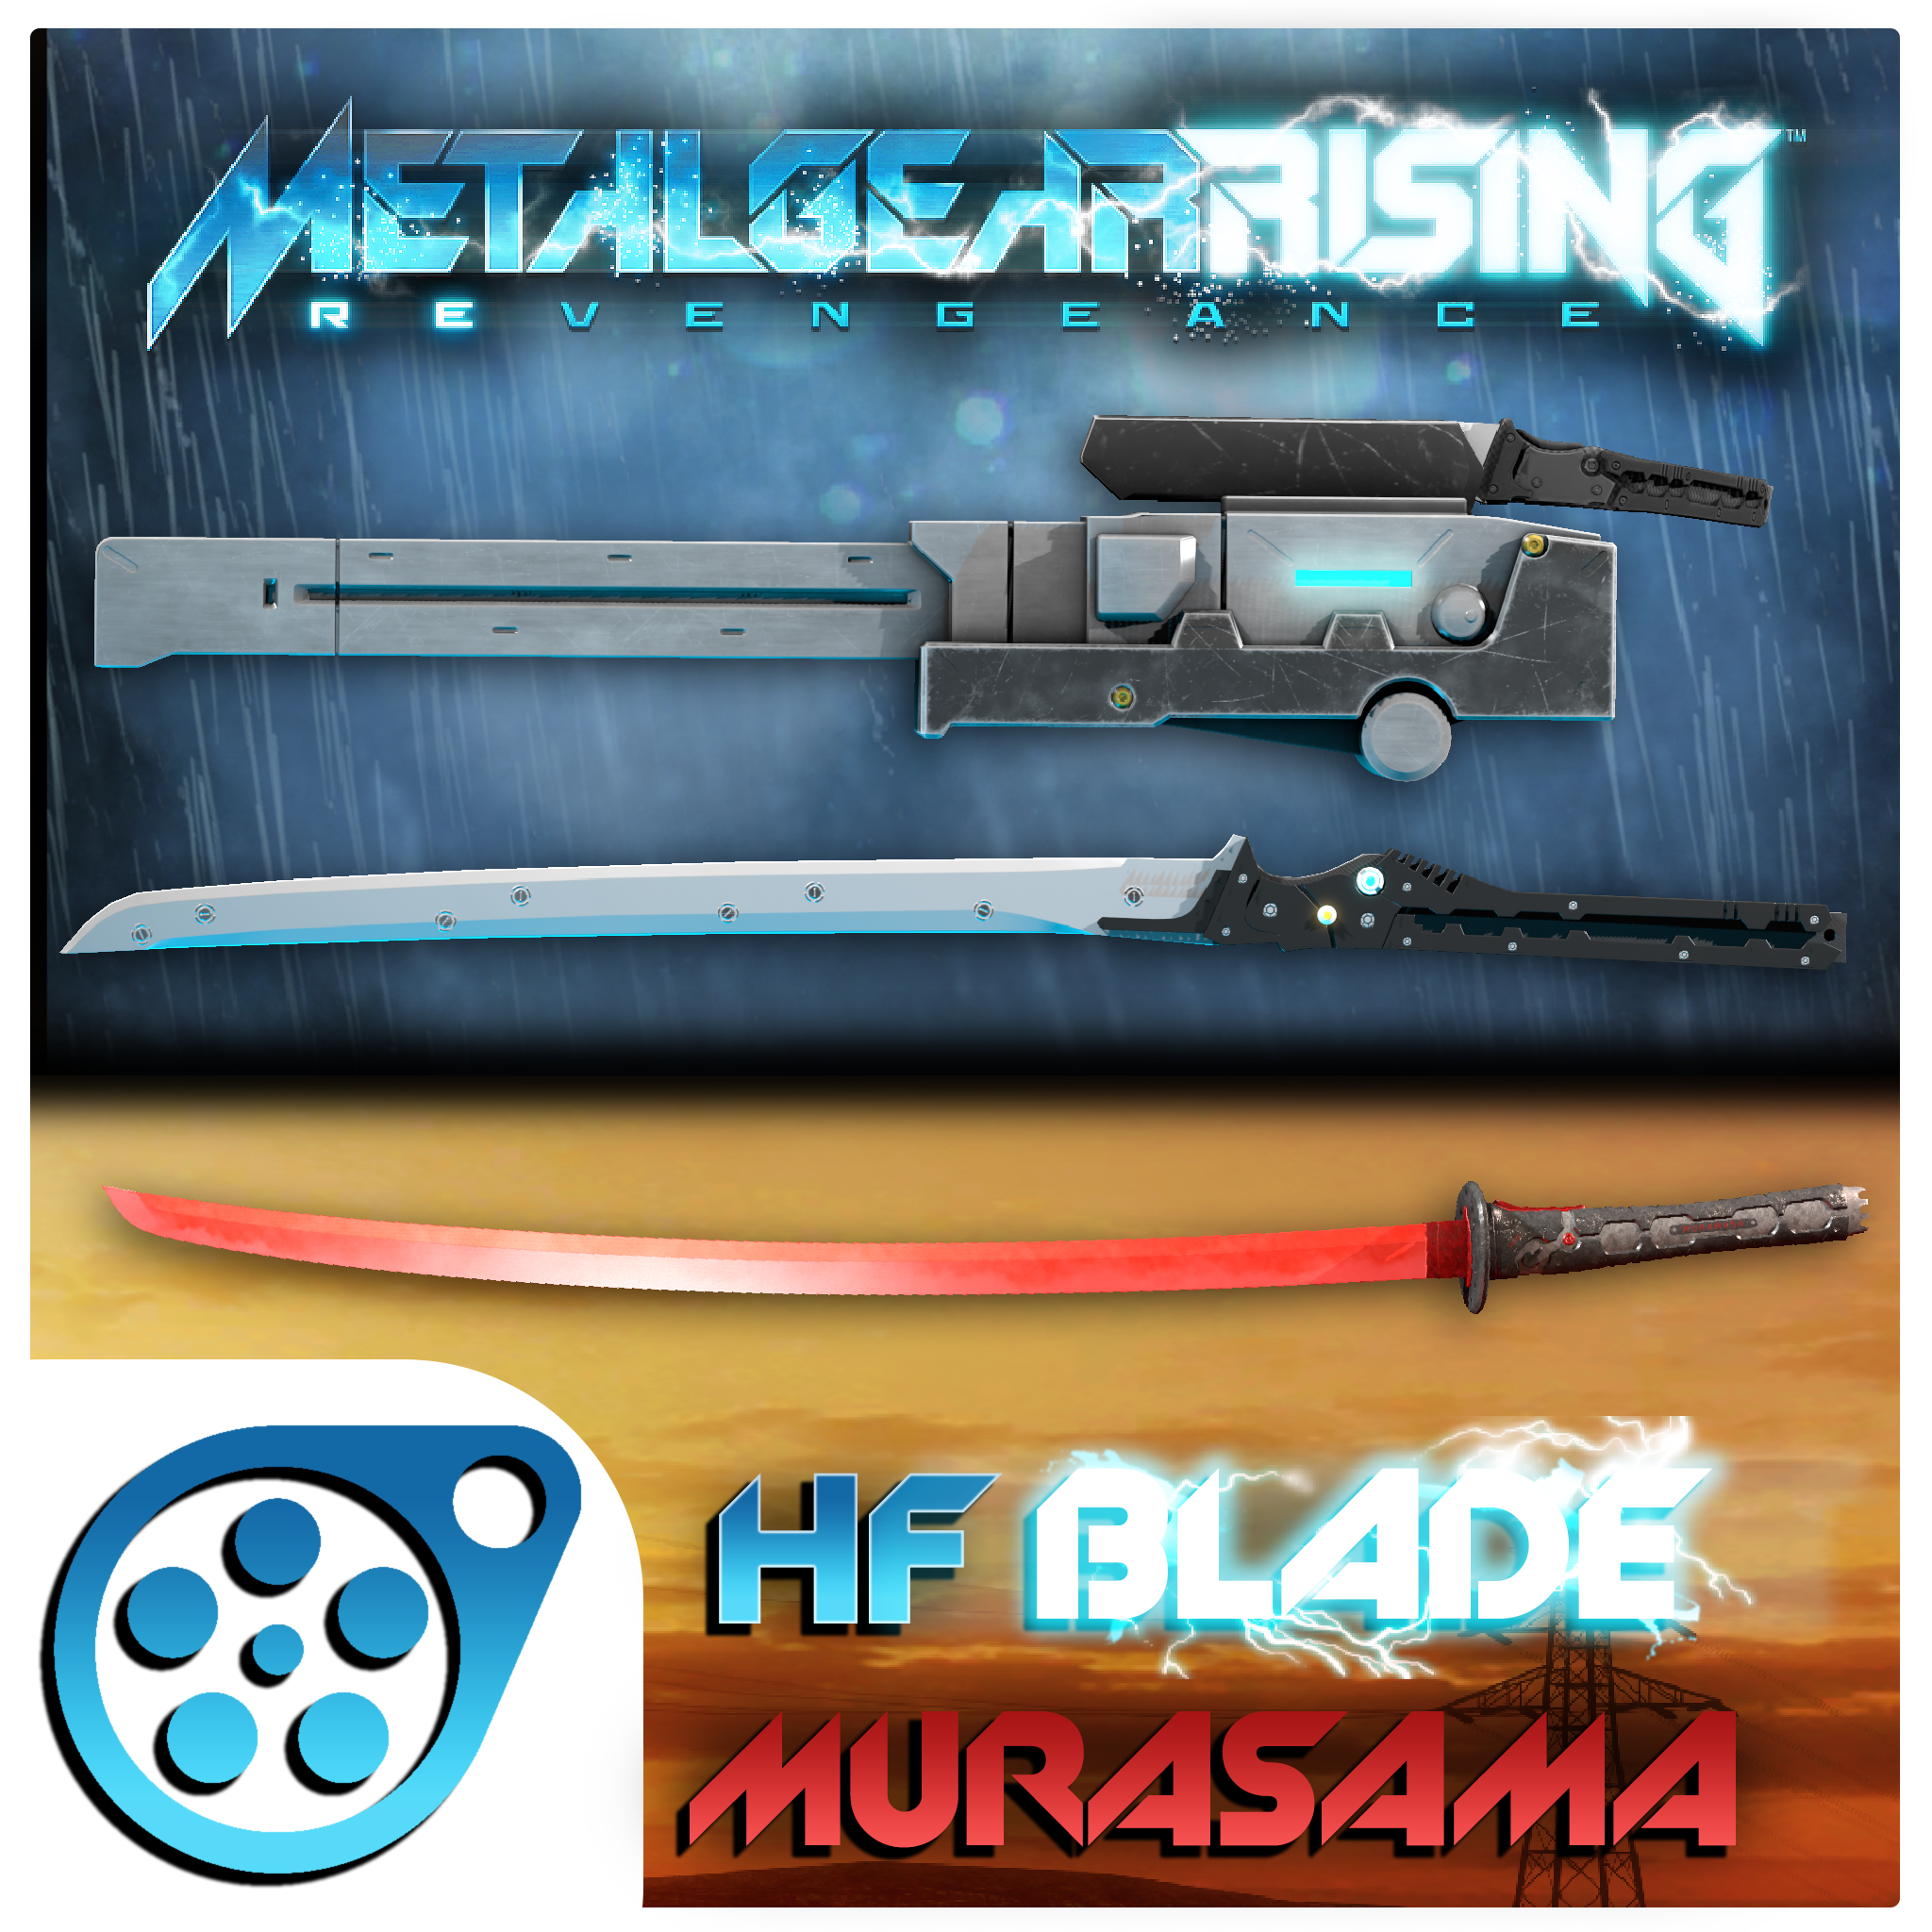 ArtStation - MURASAMA HF Blade